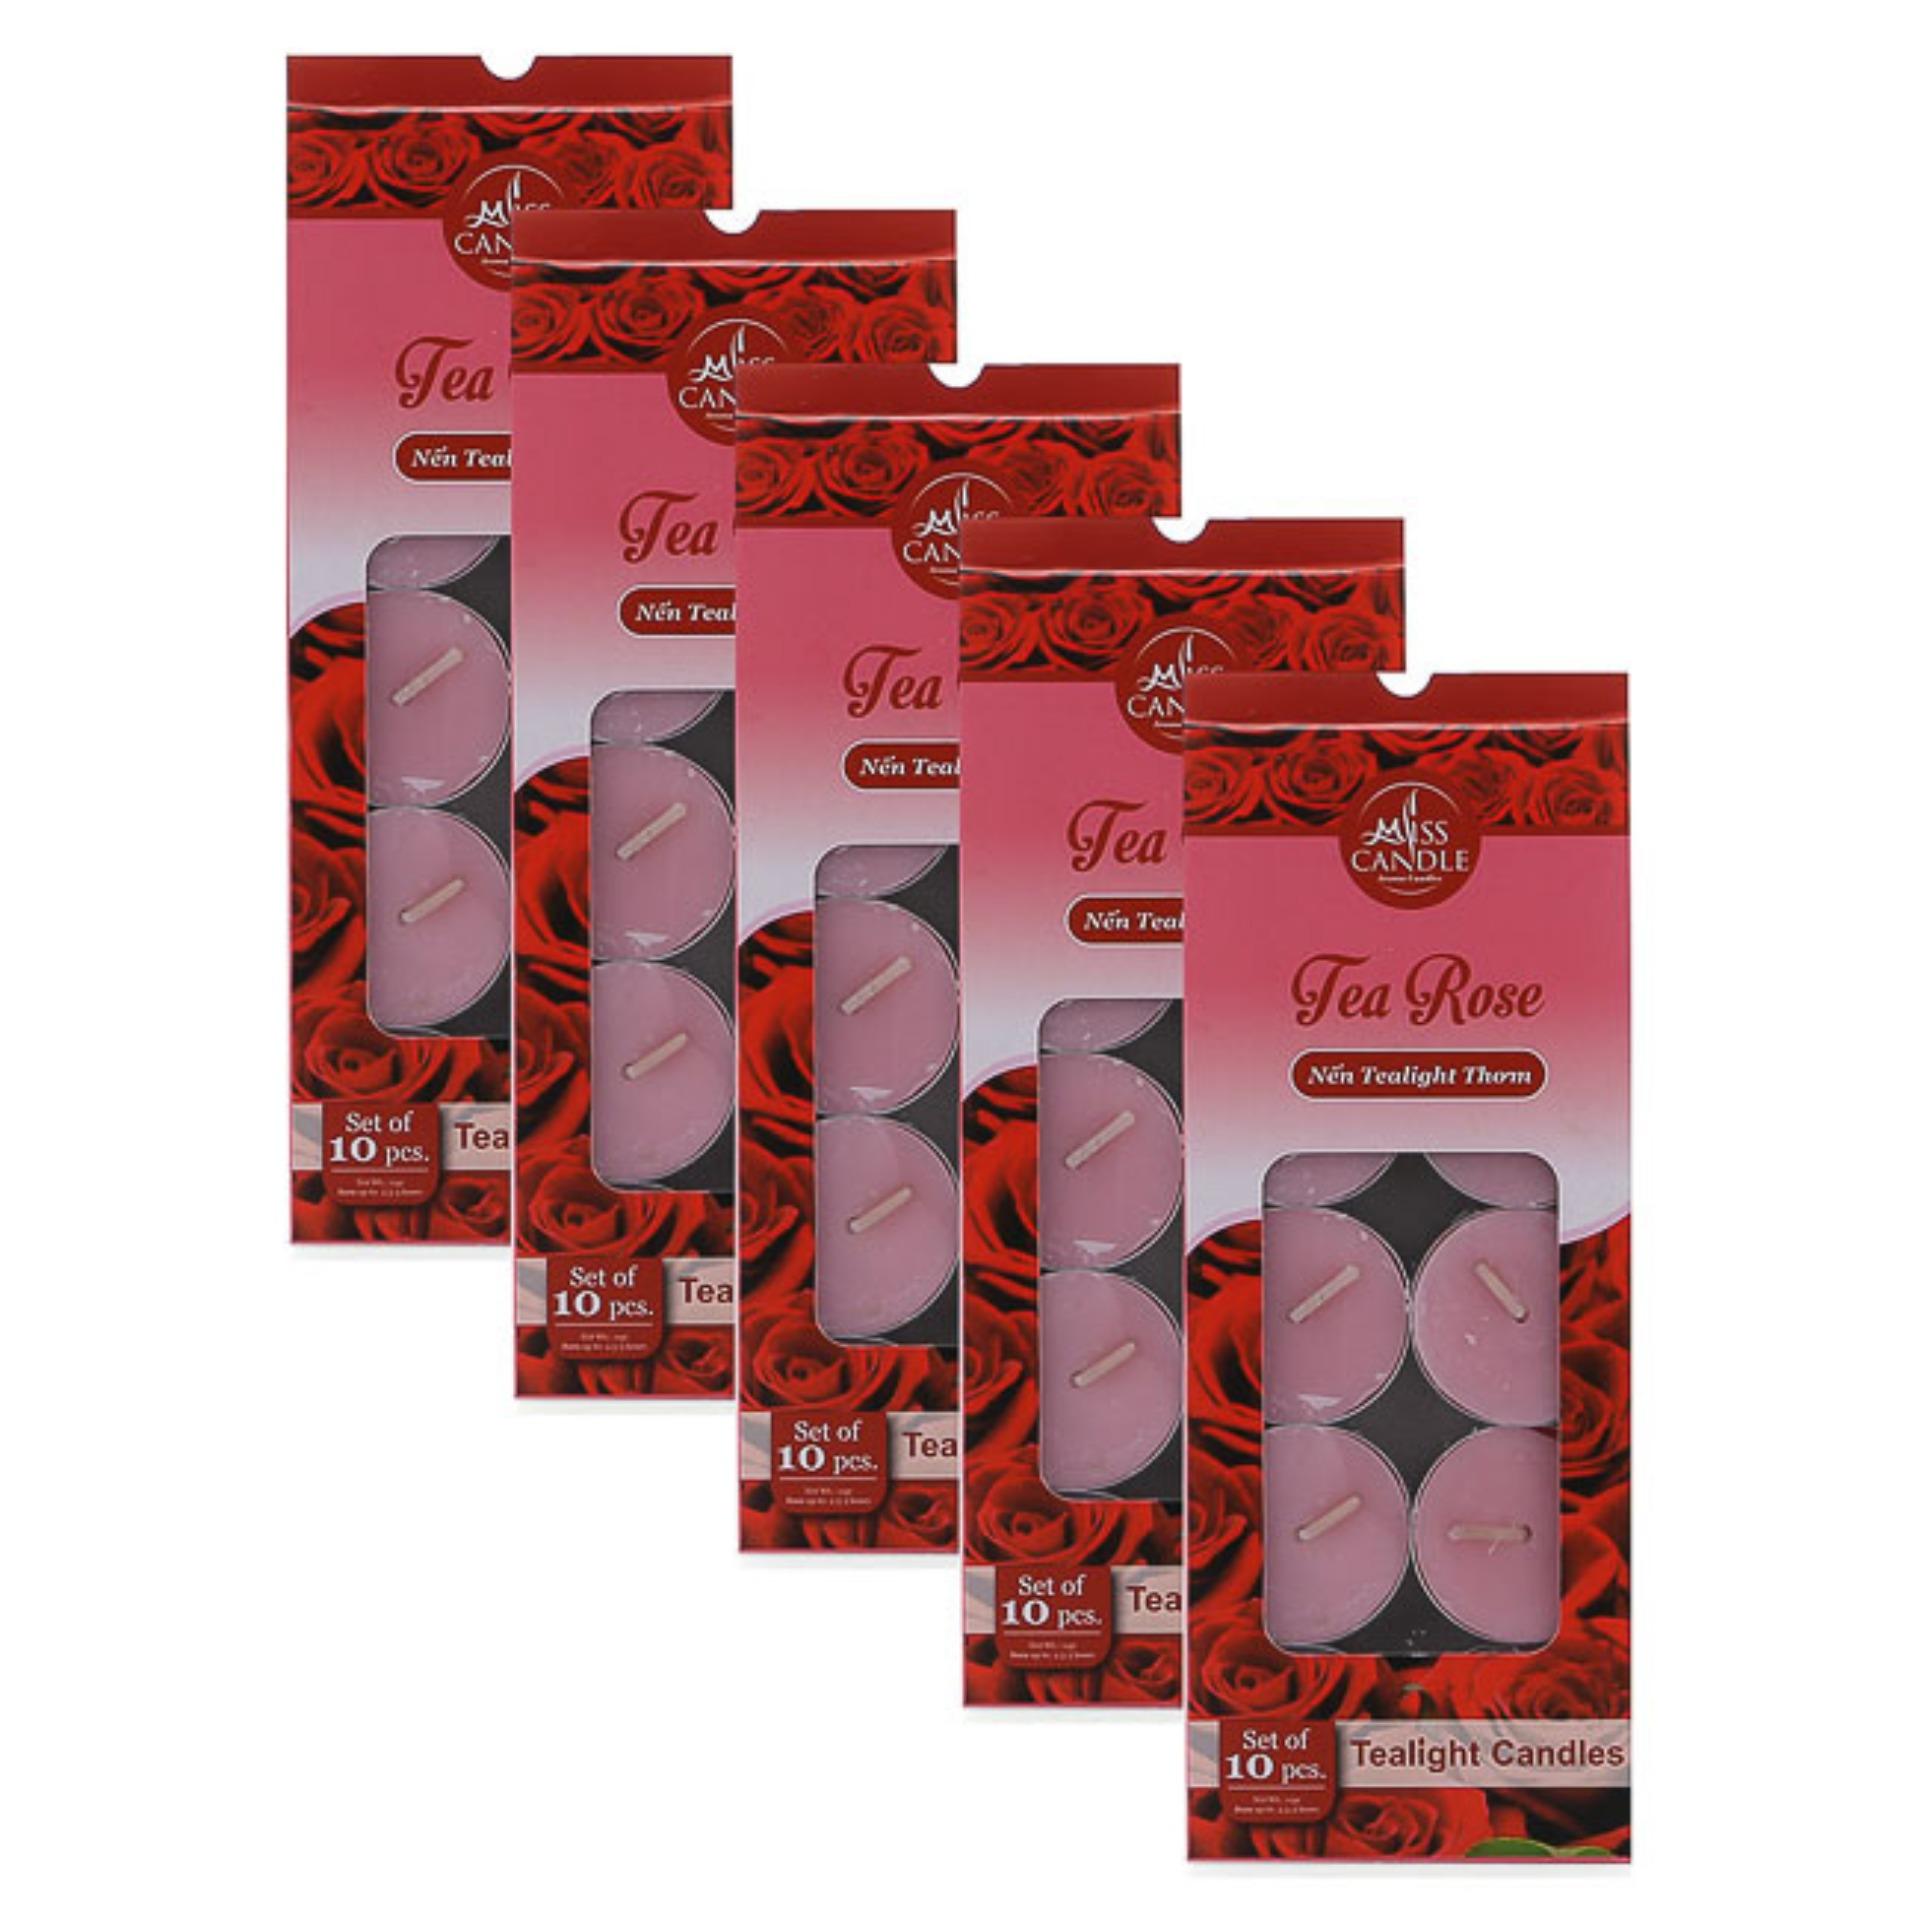 Bộ 5 hộp 50 nến tealight thơm hương kẹo ngọt ngào Miss Candle FtraMart FTM-NQM0147 (Cam)